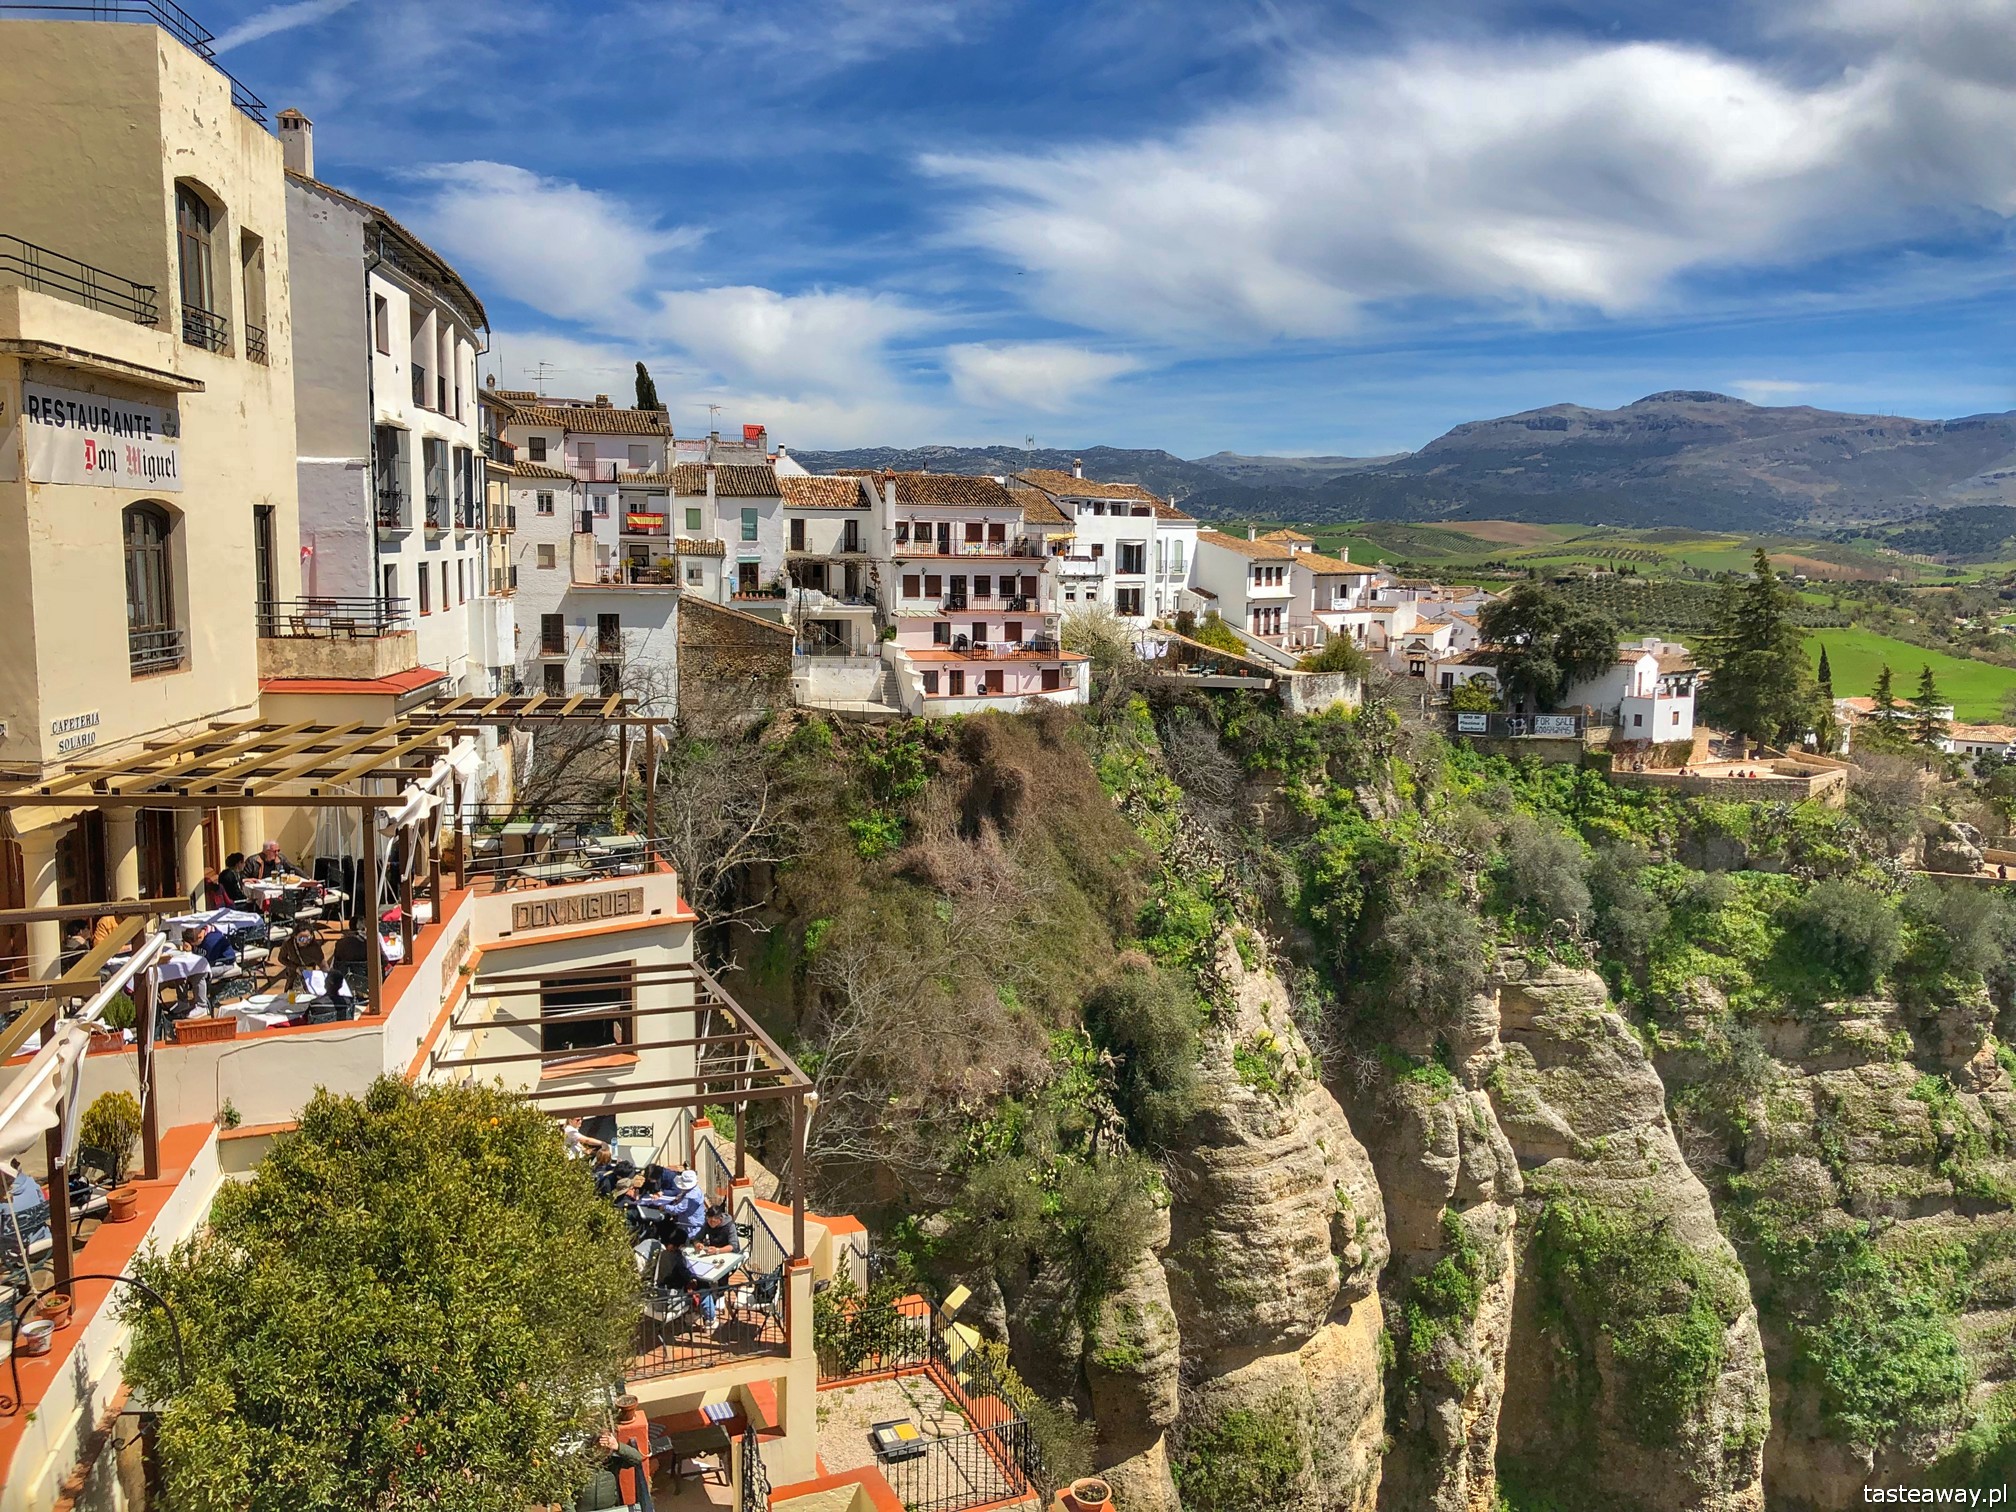 Andaluzja, Ronda, Hiszpania, co zobaczyć w Andaluzji, najpiękniejsze miejsca w Andaluzji, Carrera Espinel, co zobaczyć w Rondzie, casas colgadas